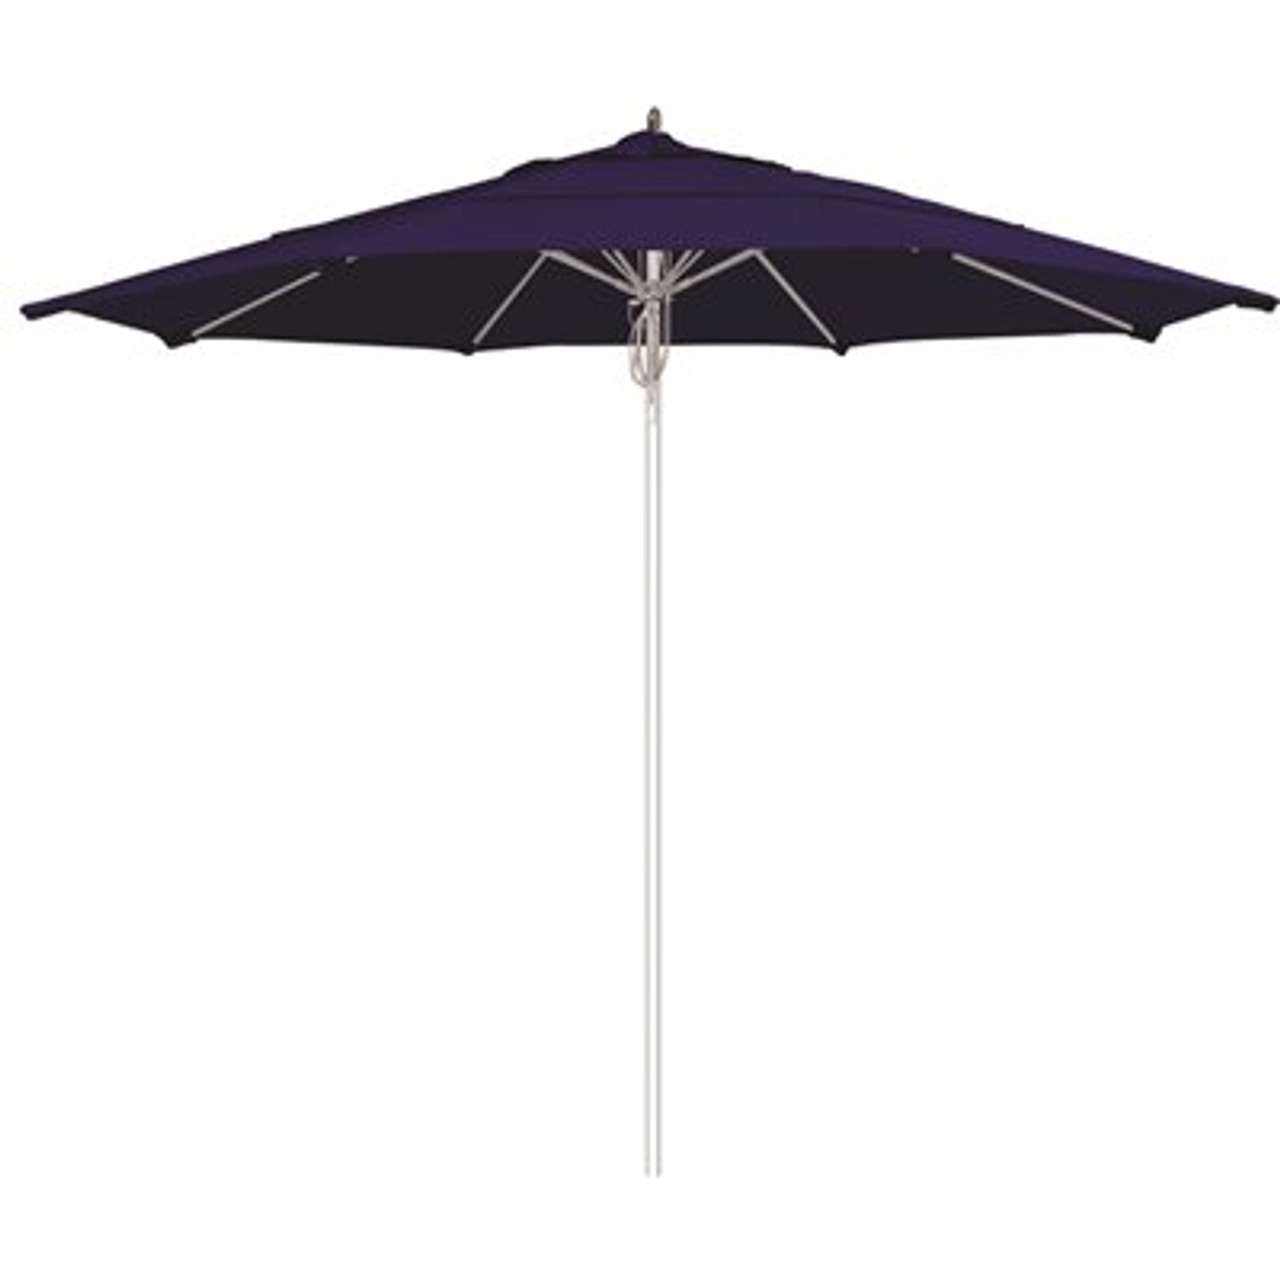 11 ft. Silver Aluminum Commercial Fiberglass Ribs Market Patio Umbrella and Pulley Lift in True Blue Sunbrella